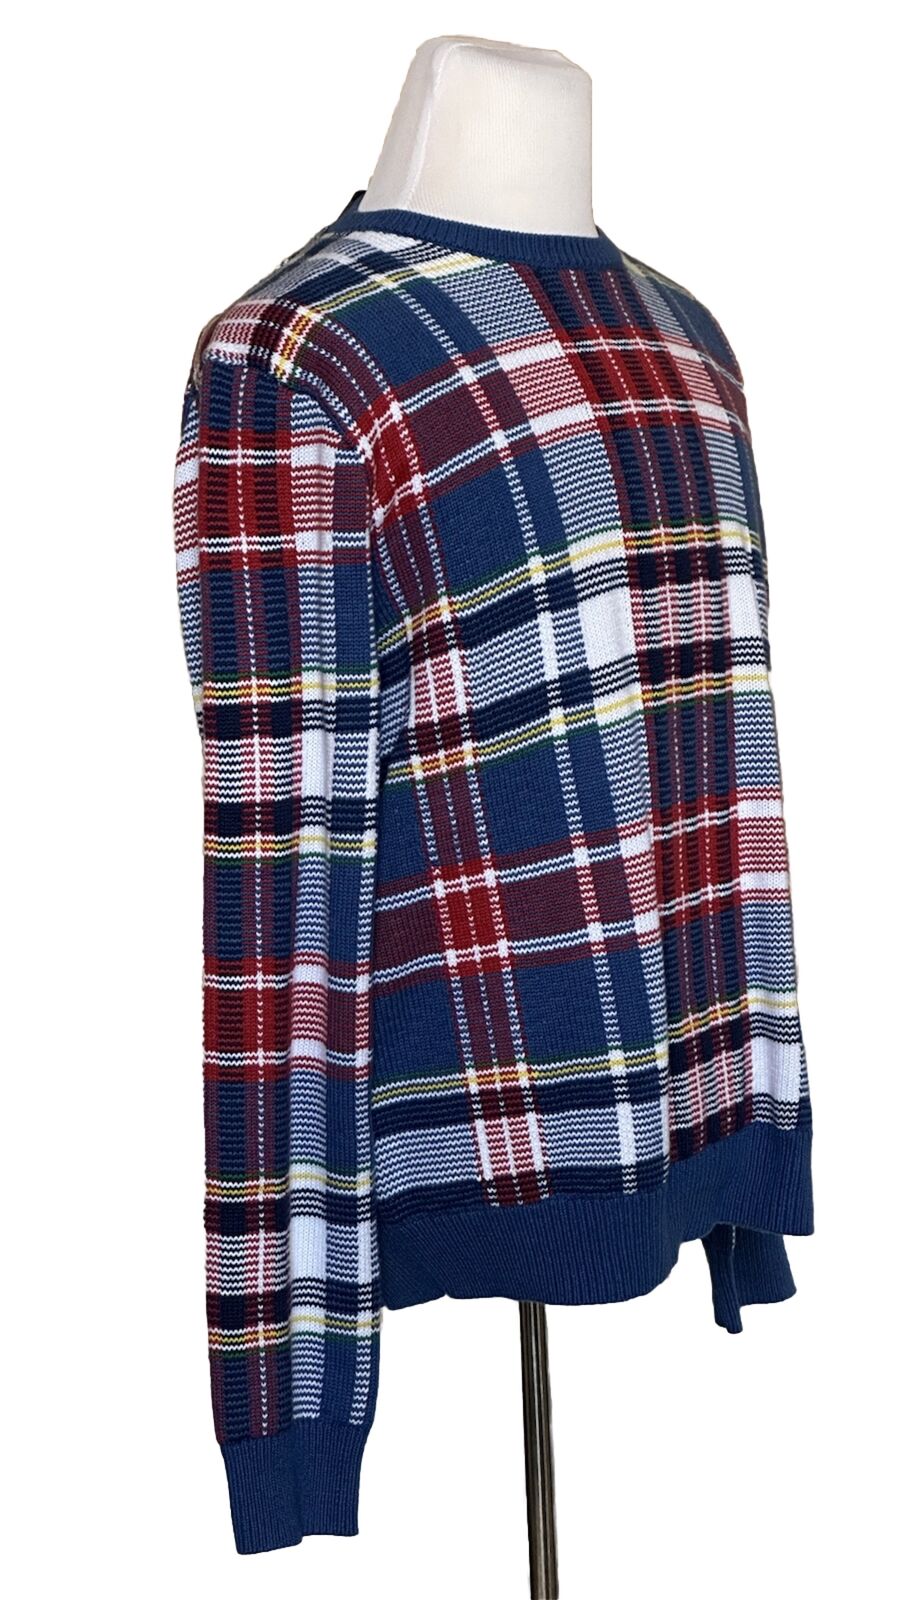 NWT $398 Polo Ralph Lauren Men's Knit Cotton Sweater Multicolor Large